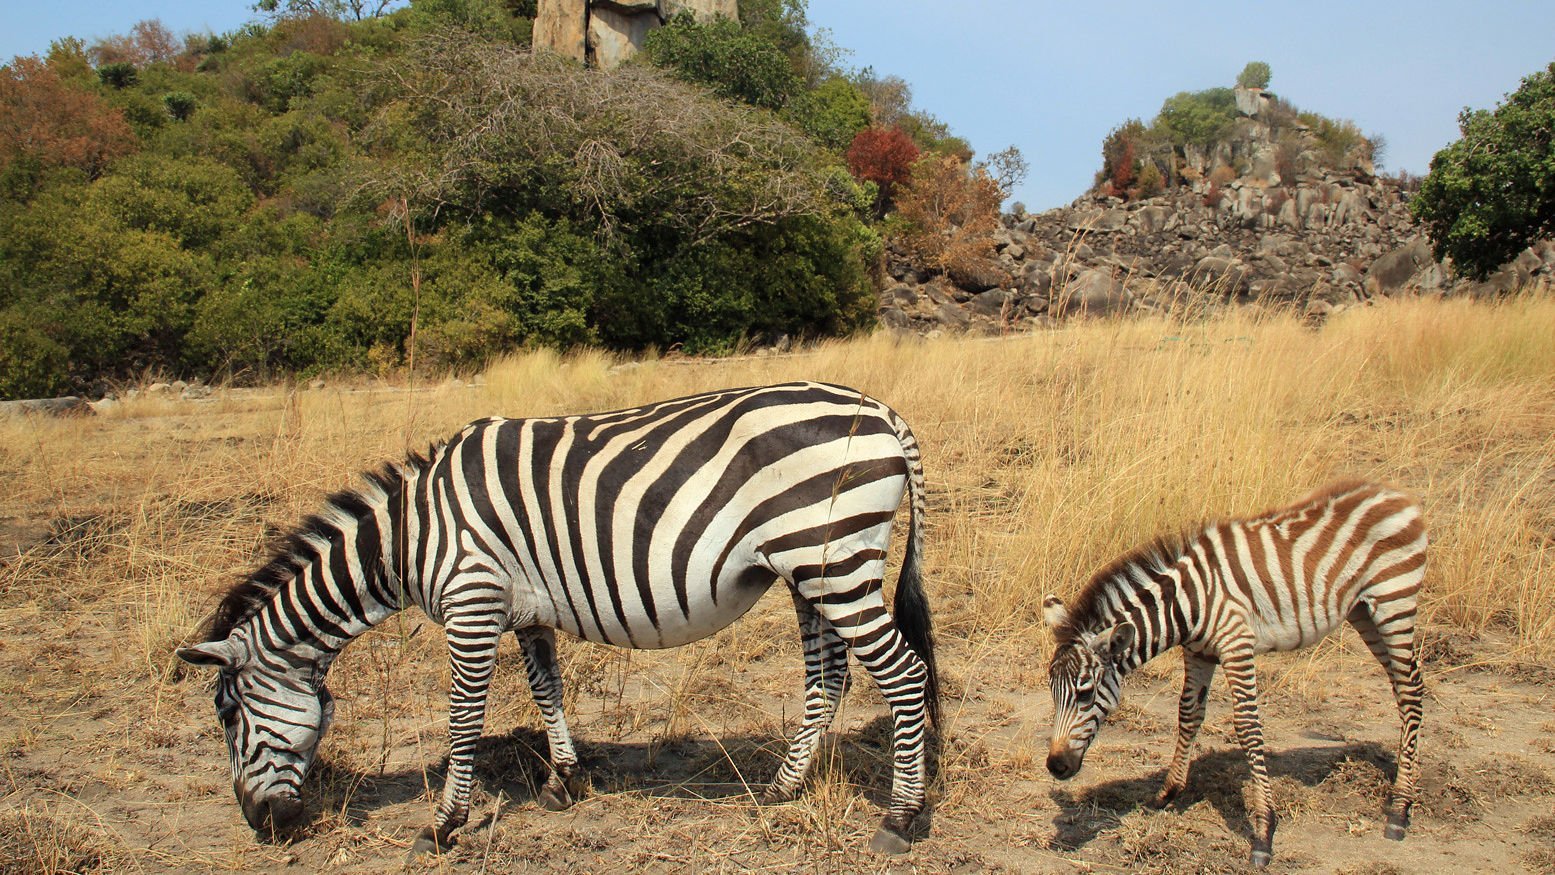 Zebra on Saanane Island National Park Tanzania by Pavlo Kuzyk